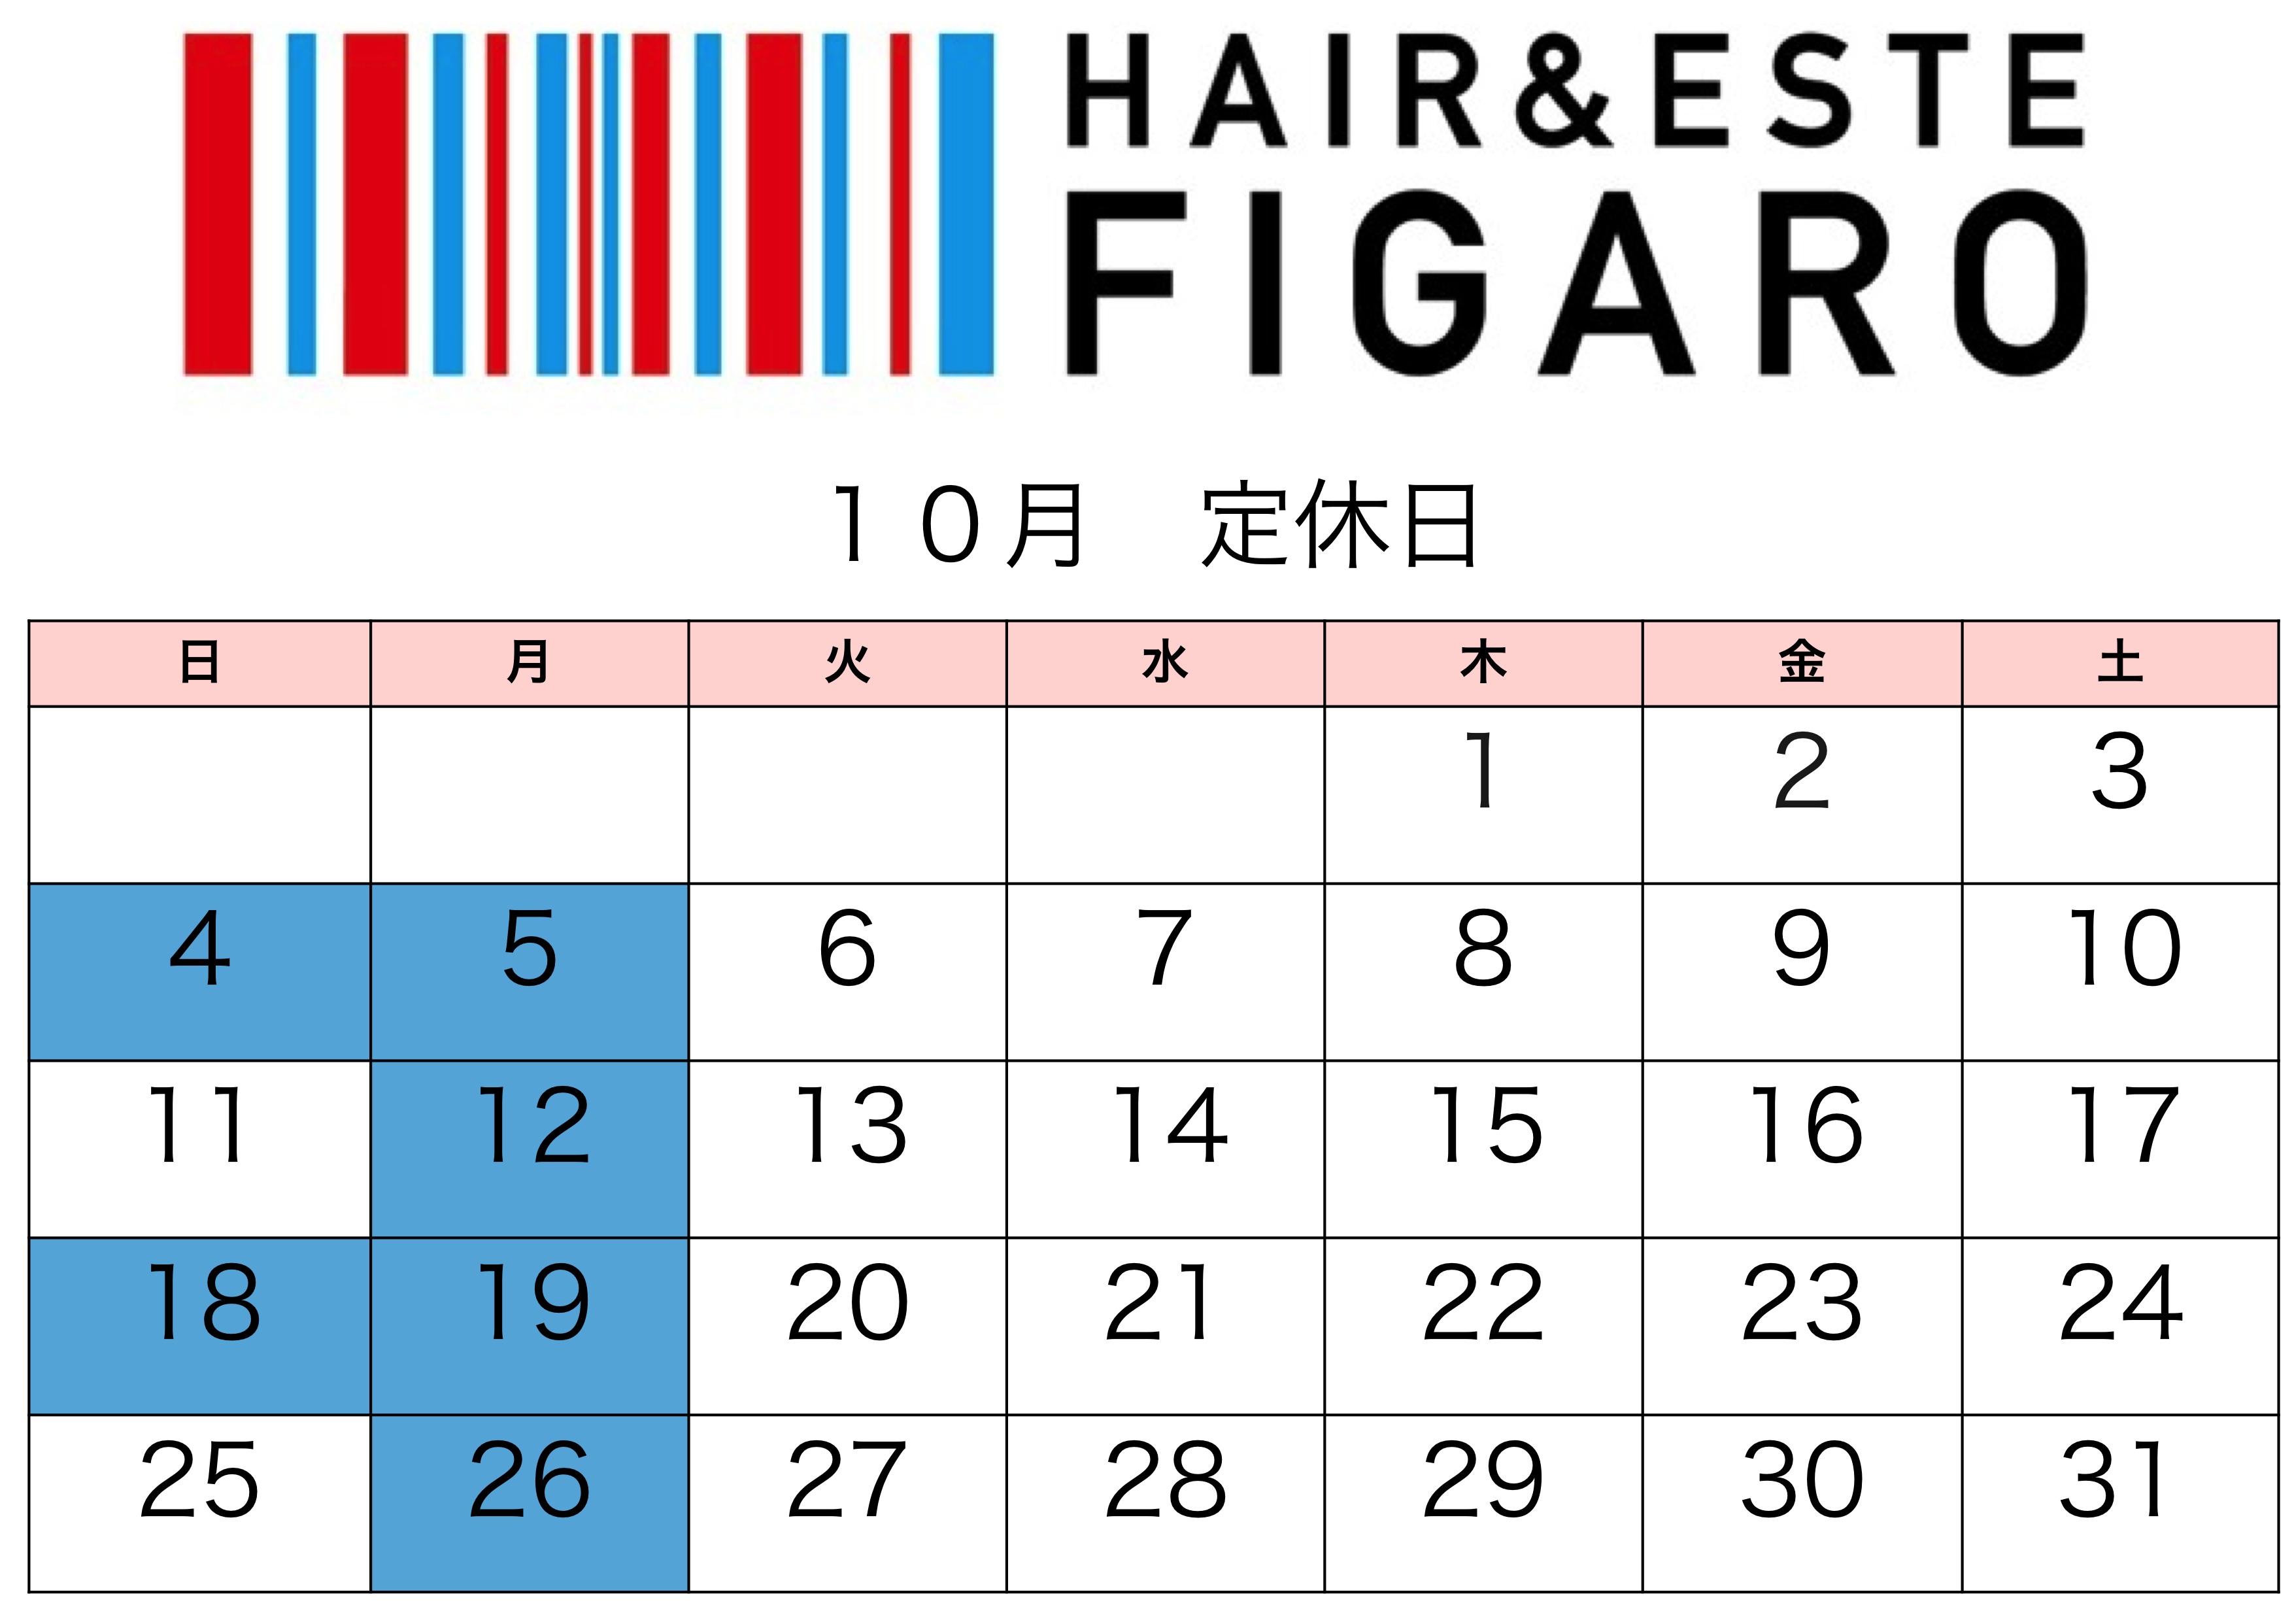 http://figaro-hair.com/blog/2015%E5%B9%B4%EF%BC%91%EF%BC%90%E6%9C%88.jpg